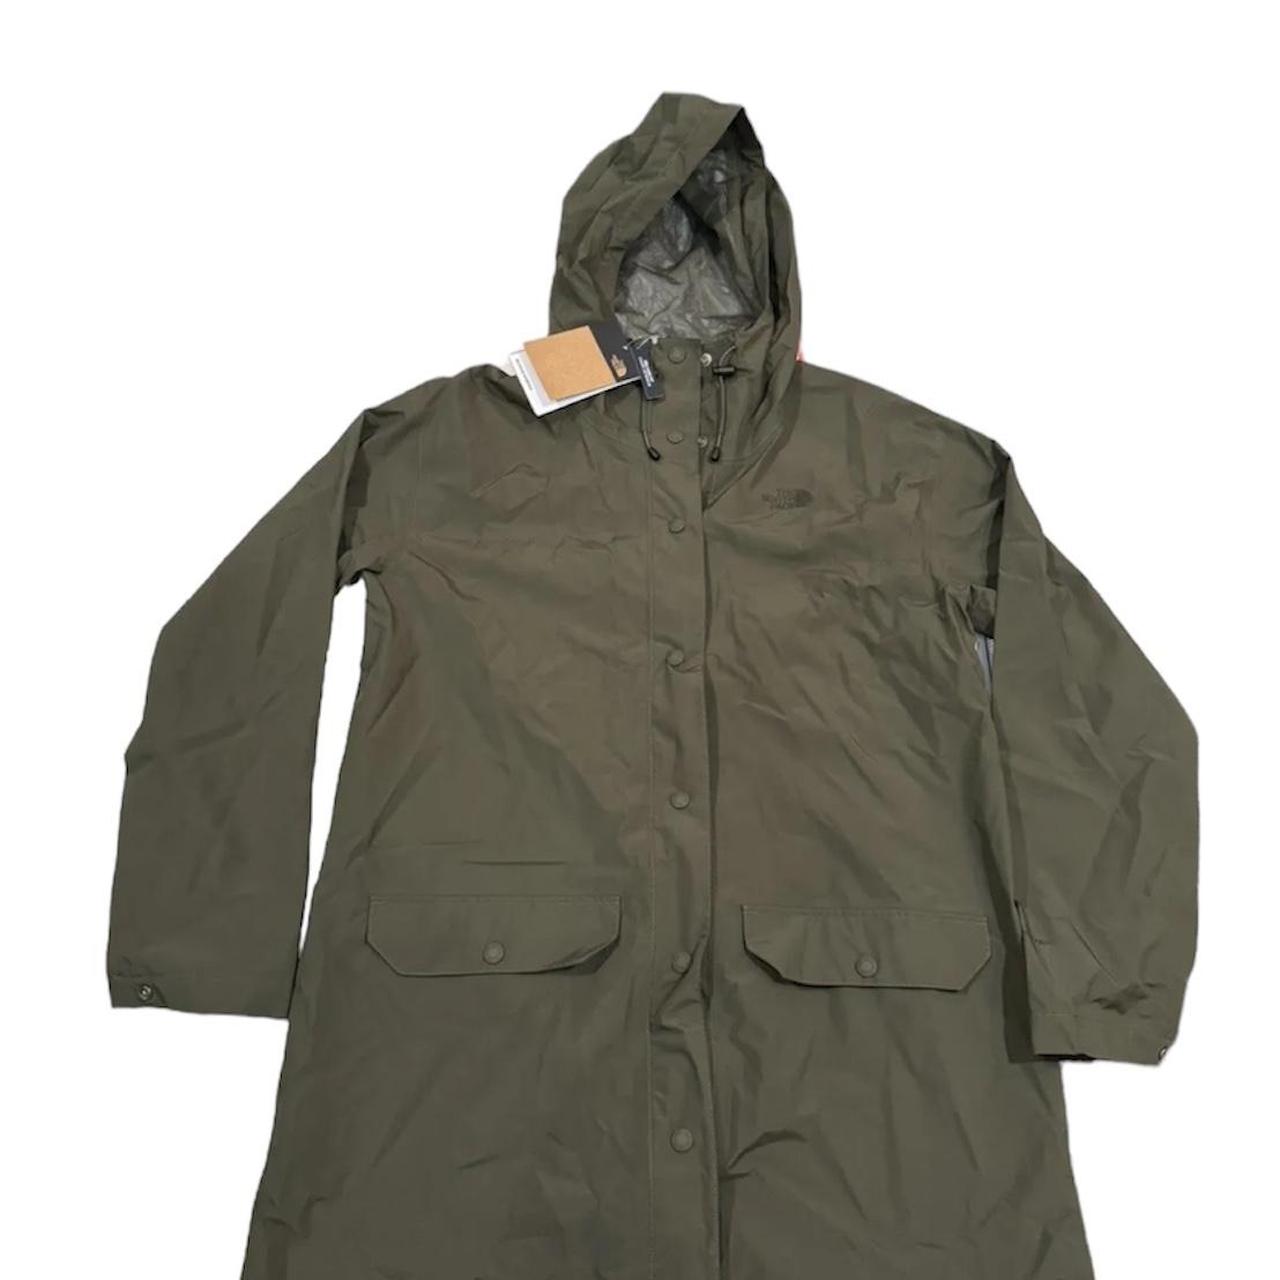 Hillside rain jacket Size medium Gutter green - Depop